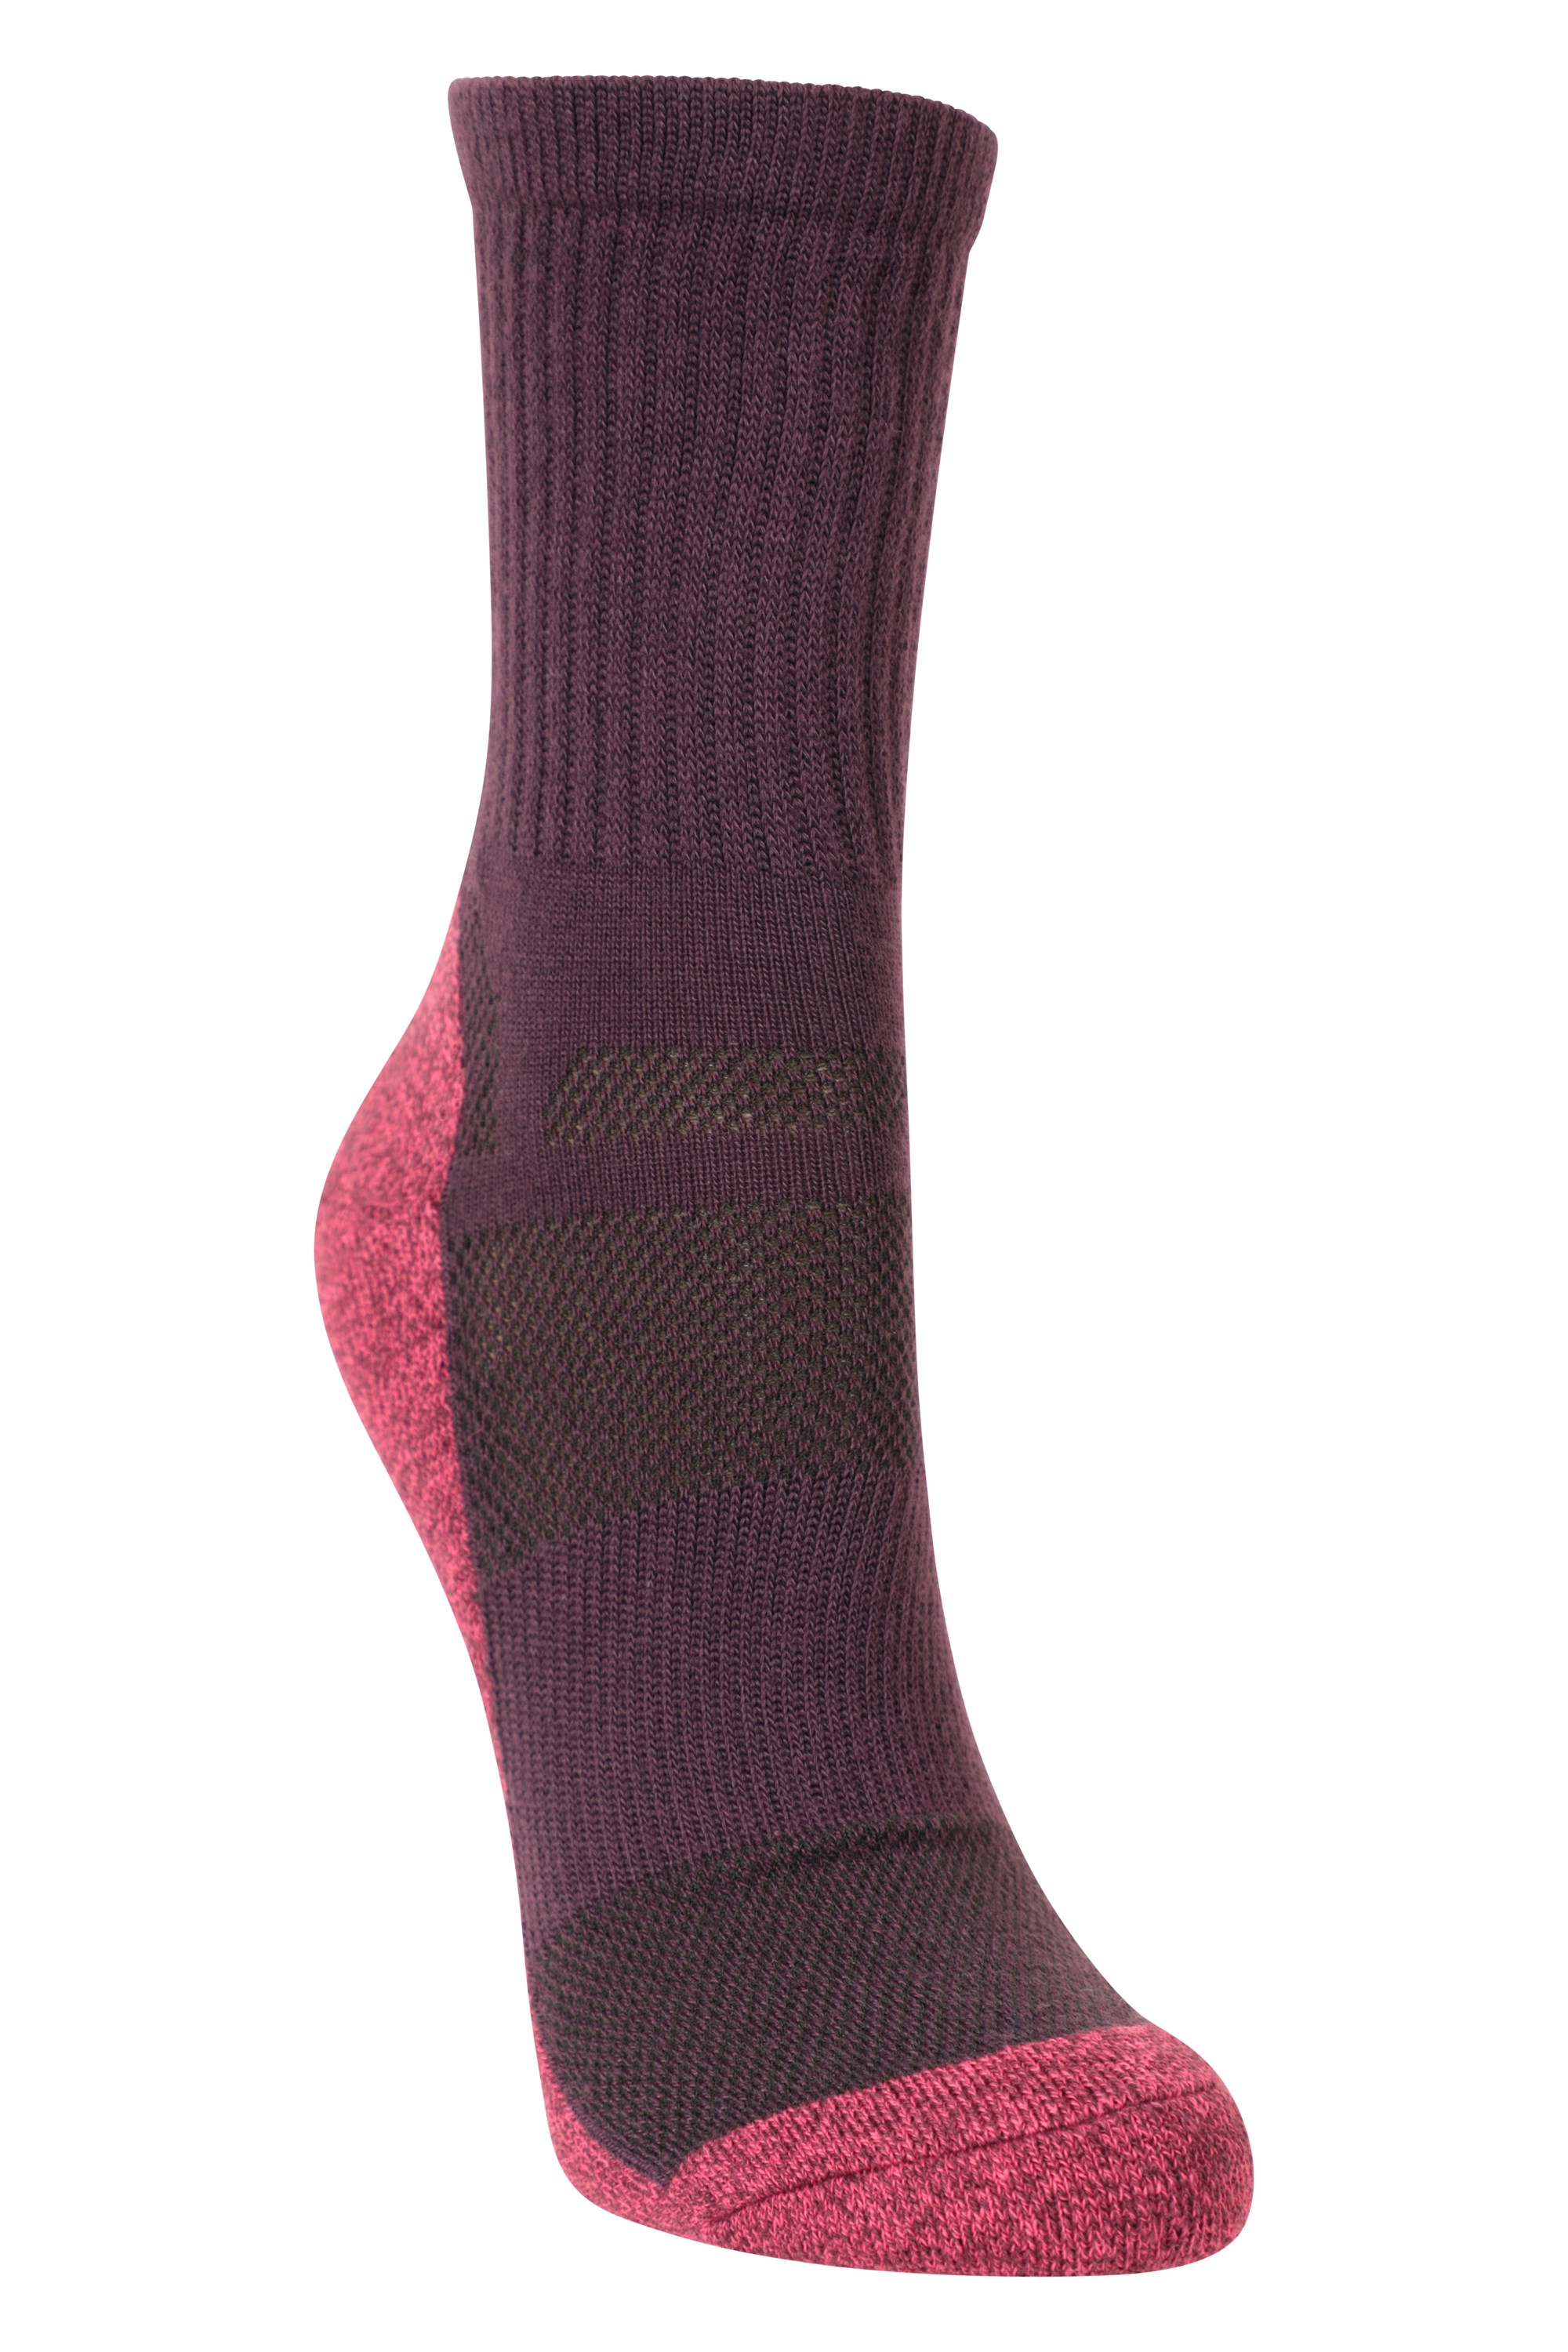 Isocool Womens Trekker Socks - Burgundy